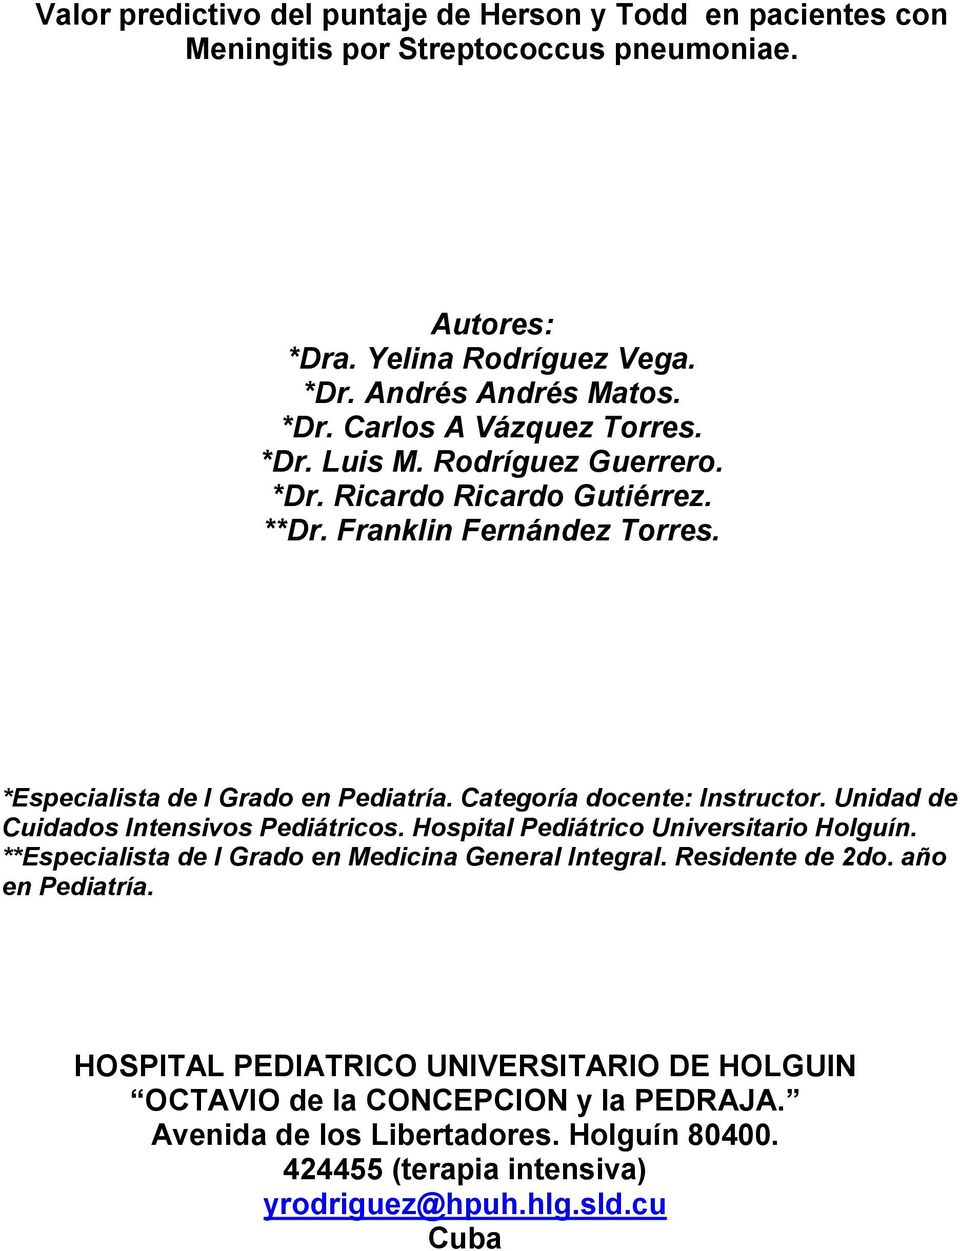 Unidad de Cuidados Intensivos Pediátricos. Hospital Pediátrico Universitario Holguín. **Especialista de I Grado en Medicina General Integral. Residente de 2do. año en Pediatría.